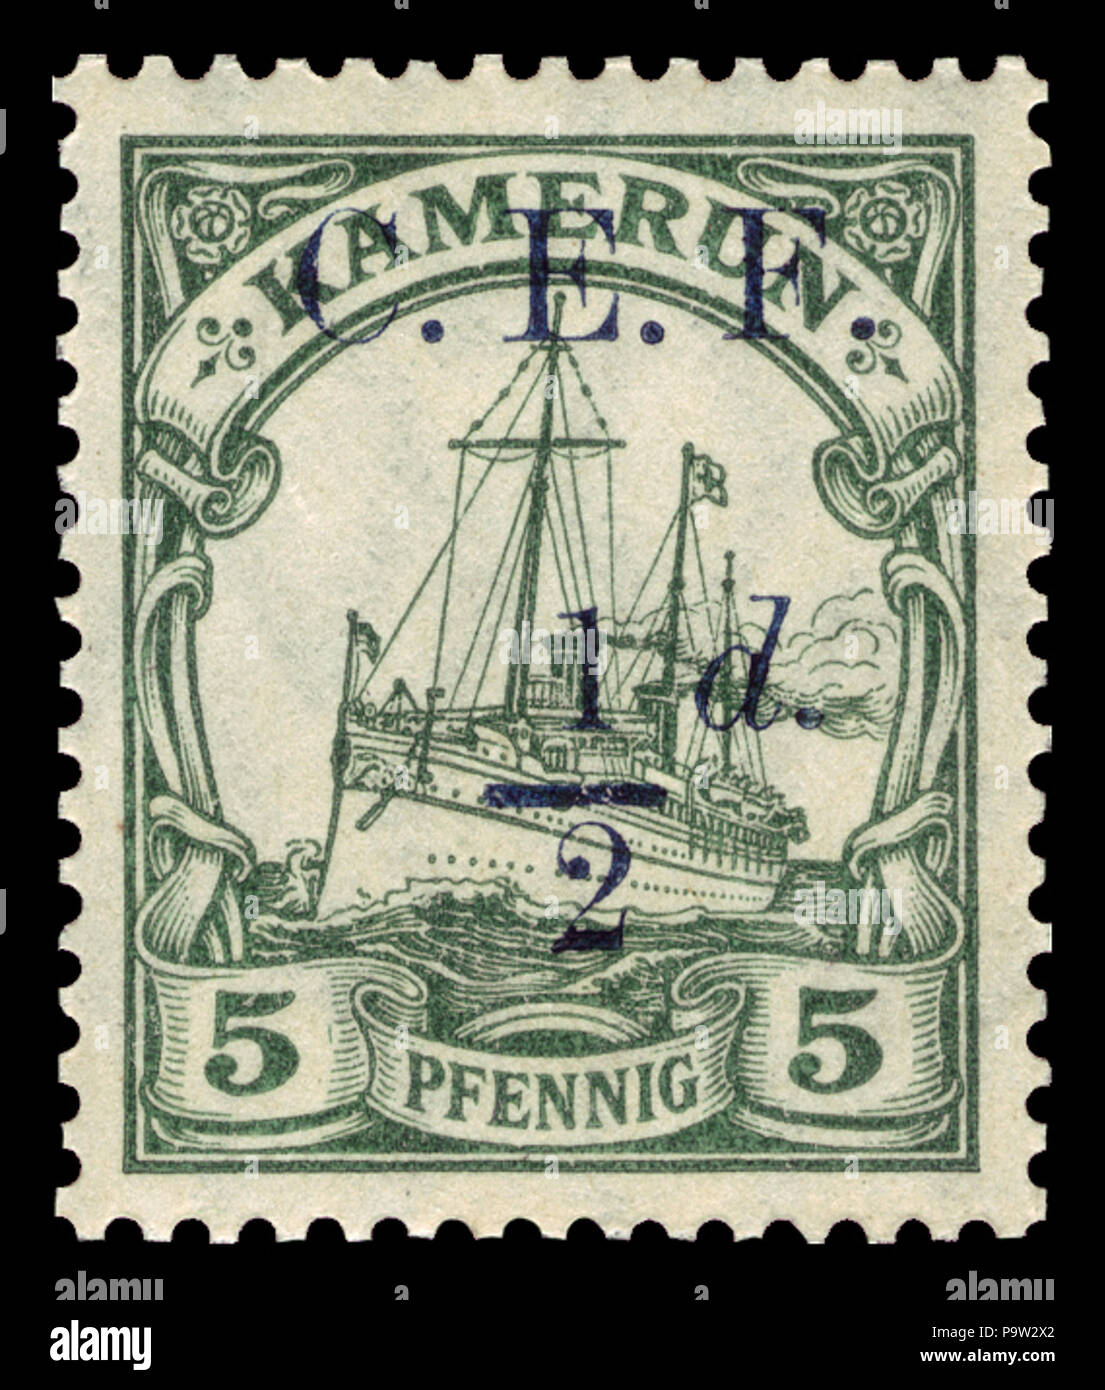 363 D-Kamerun Britisch 1915 2 Stock Photo